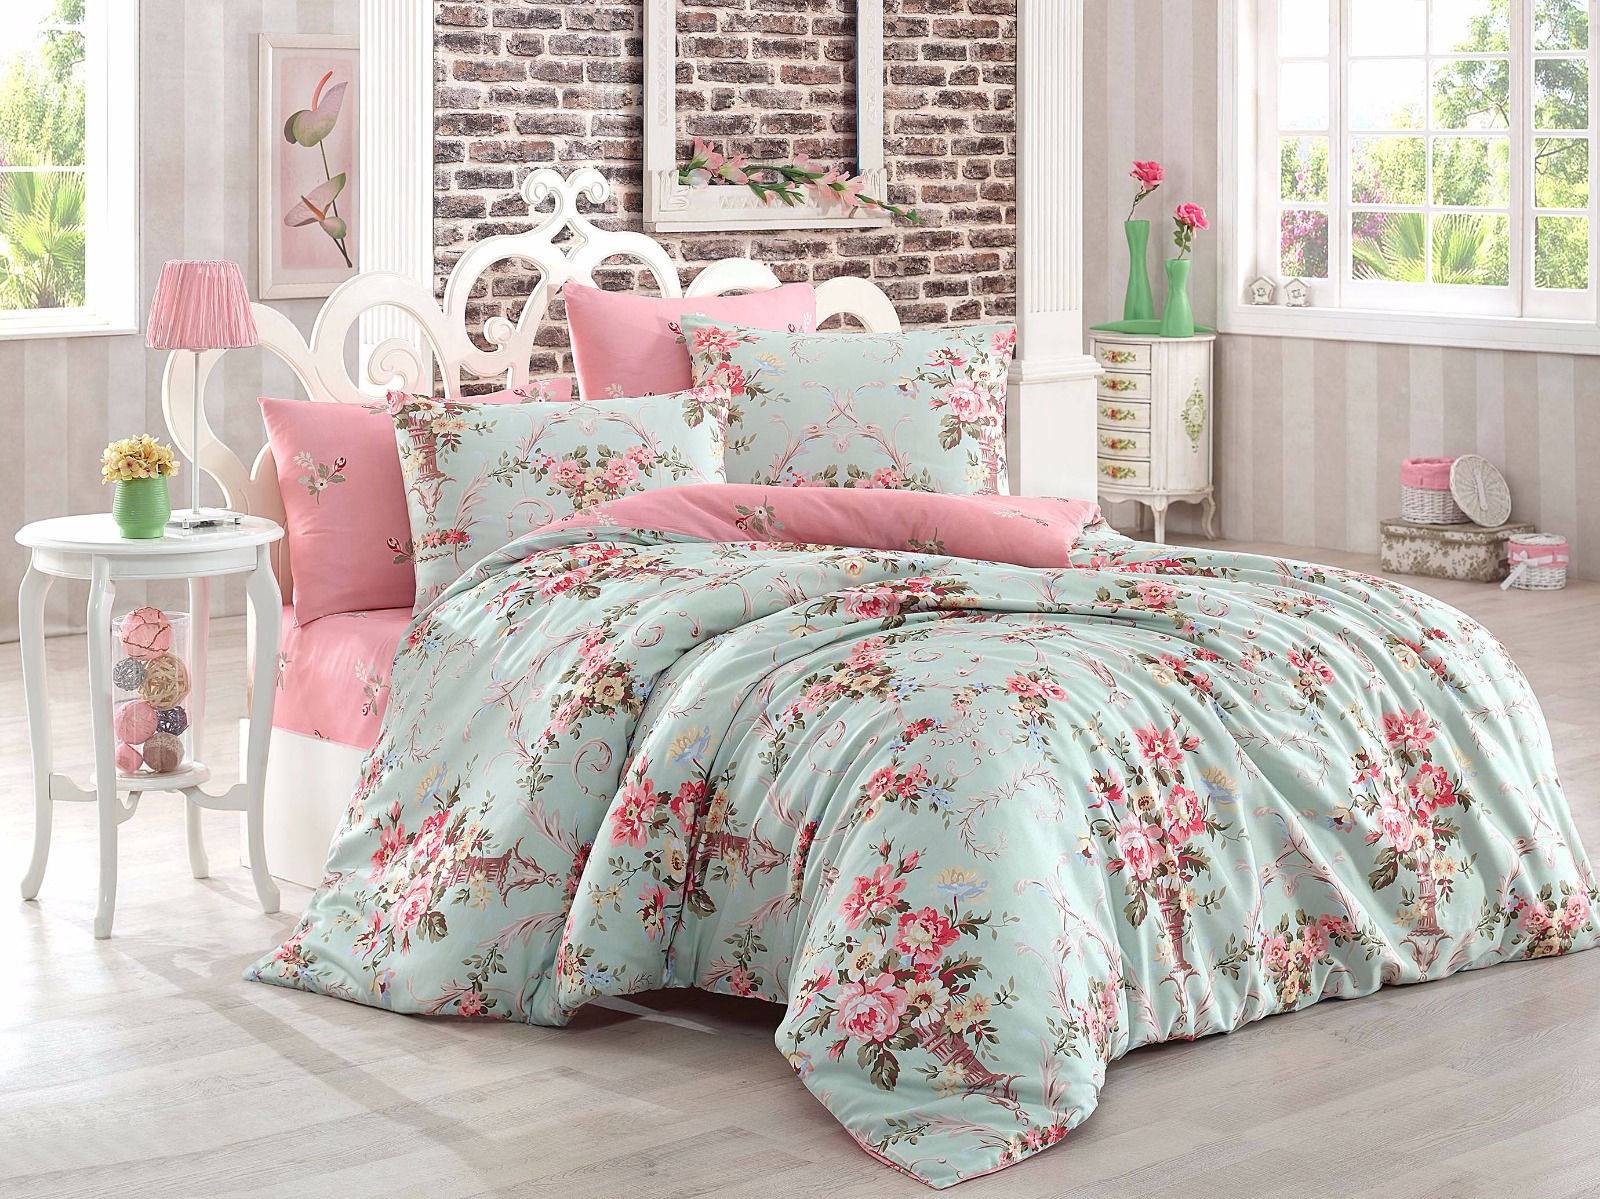 Juego de cama Antoinette 200x220cm con sábana plana 220x240cm y 2 fundas de almohada 50x70cm Tela Motivo floral verde menta y rosa